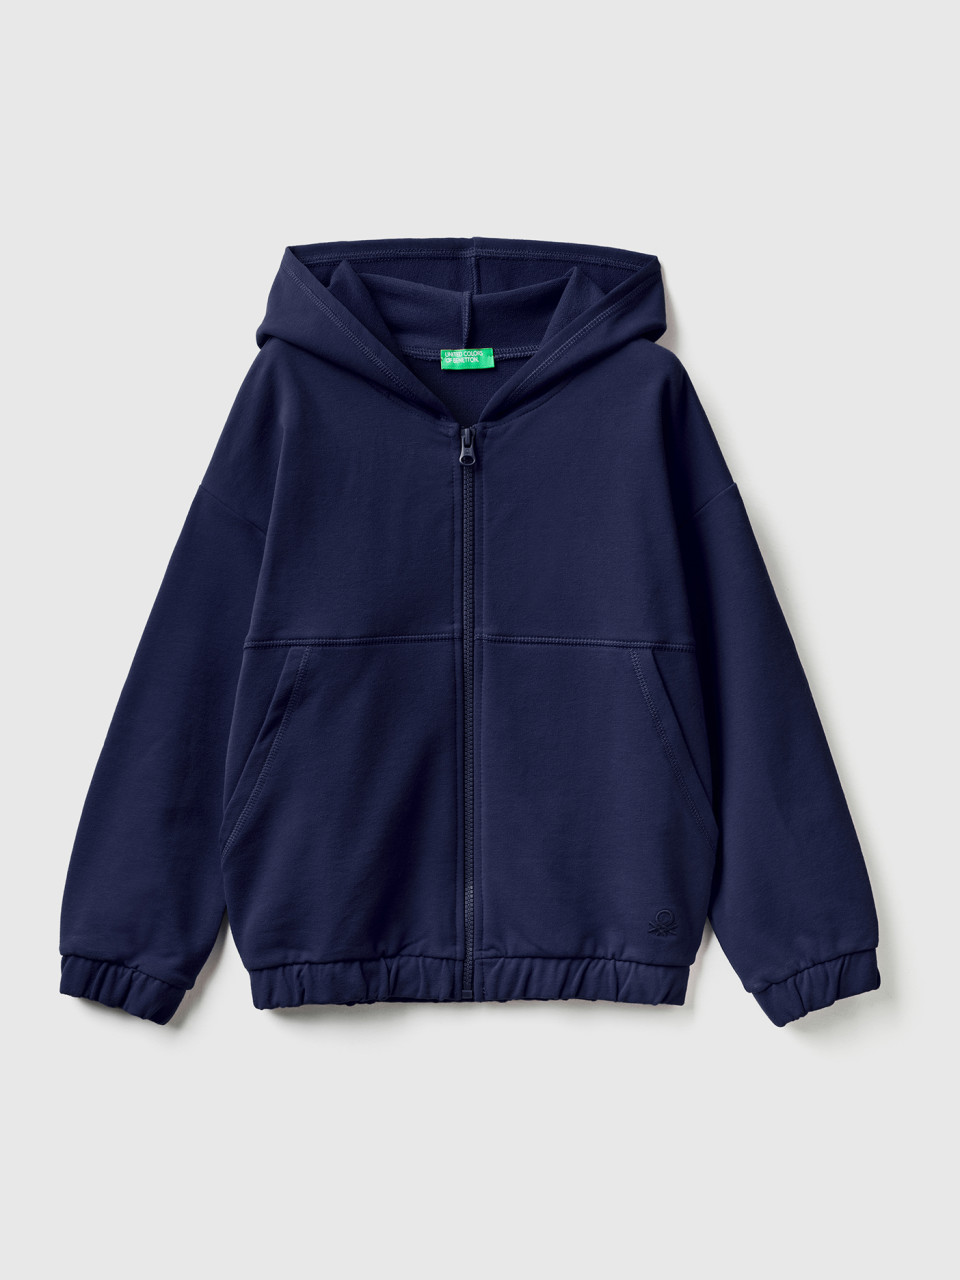 Benetton, Warm Sweatshirt With Zip And Embroidered Logo, Dark Blue, Kids